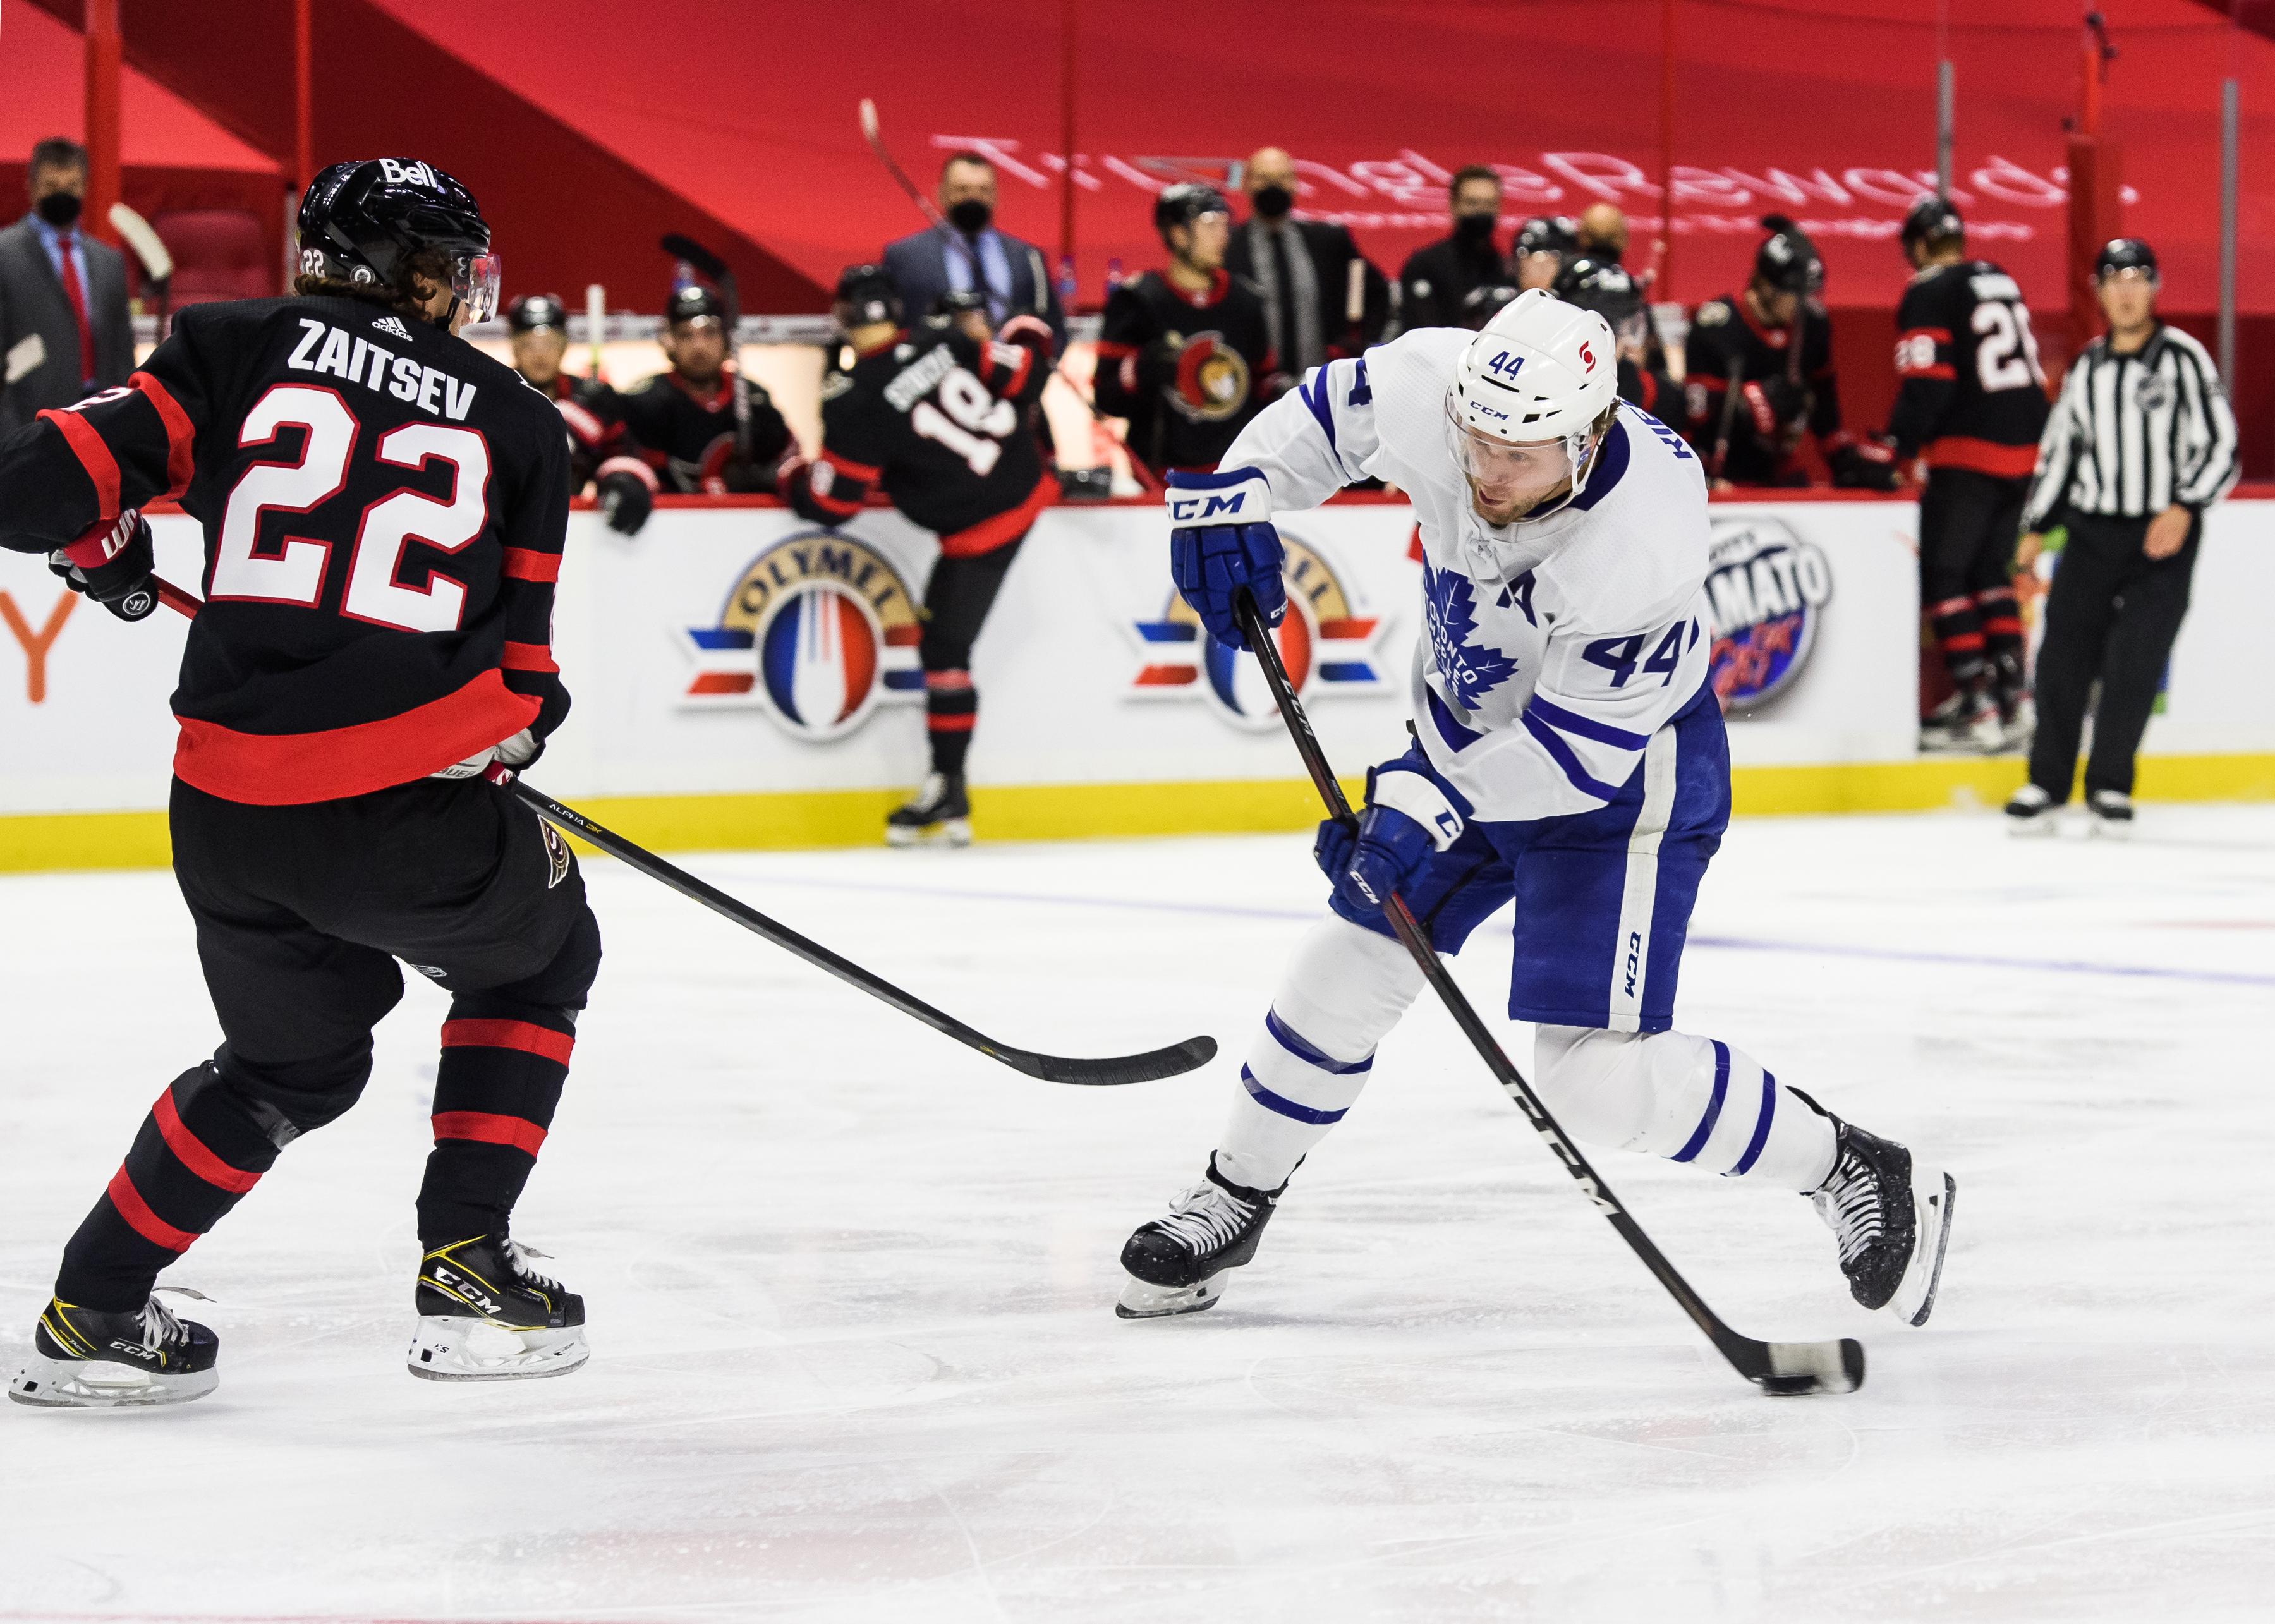 2021年5月12日，在加拿大安大略省渥太华市的加拿大轮胎中心举行的全国冰球联盟(NHL)比赛中，渥太华参议员队和多伦多枫叶队的第三节比赛中，多伦多枫叶队防守队员Morgan Rielly(44岁)向渥太华参议员队防守队员Nikita Zaitsev(22岁)投掷冰球。